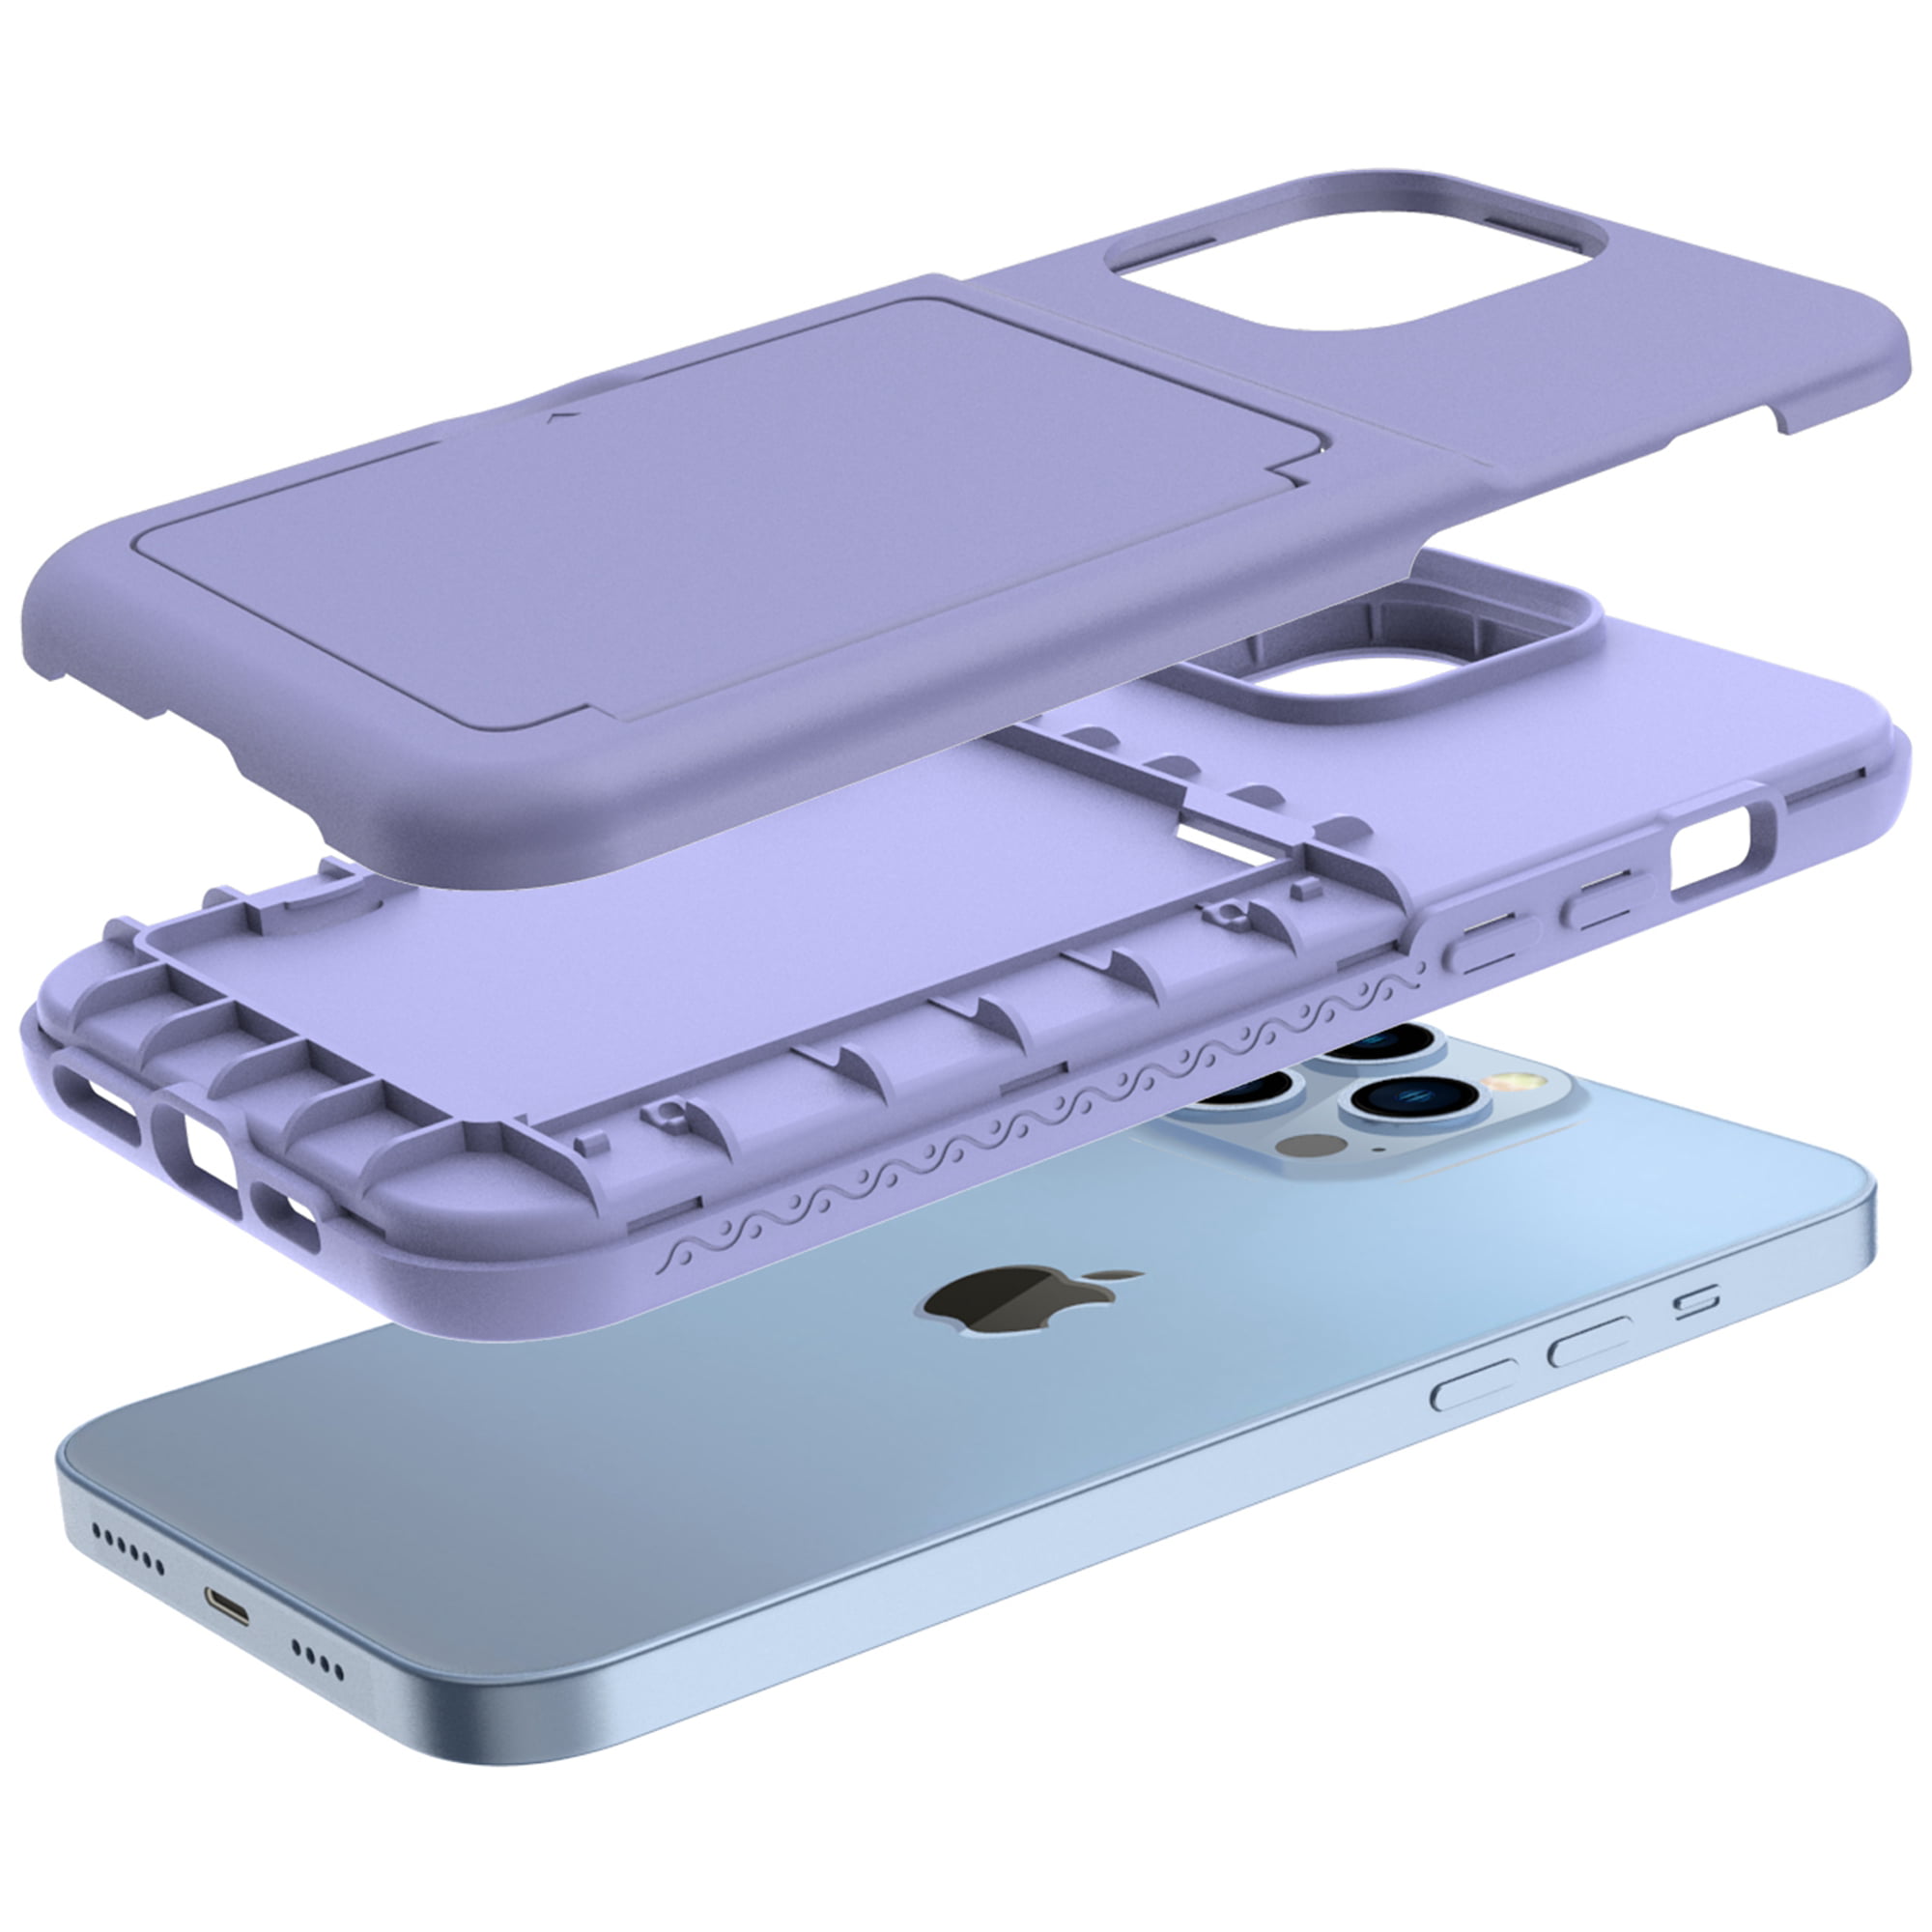  TRWQPLU Designer iPhone 13 Pro Max Wallet Case for